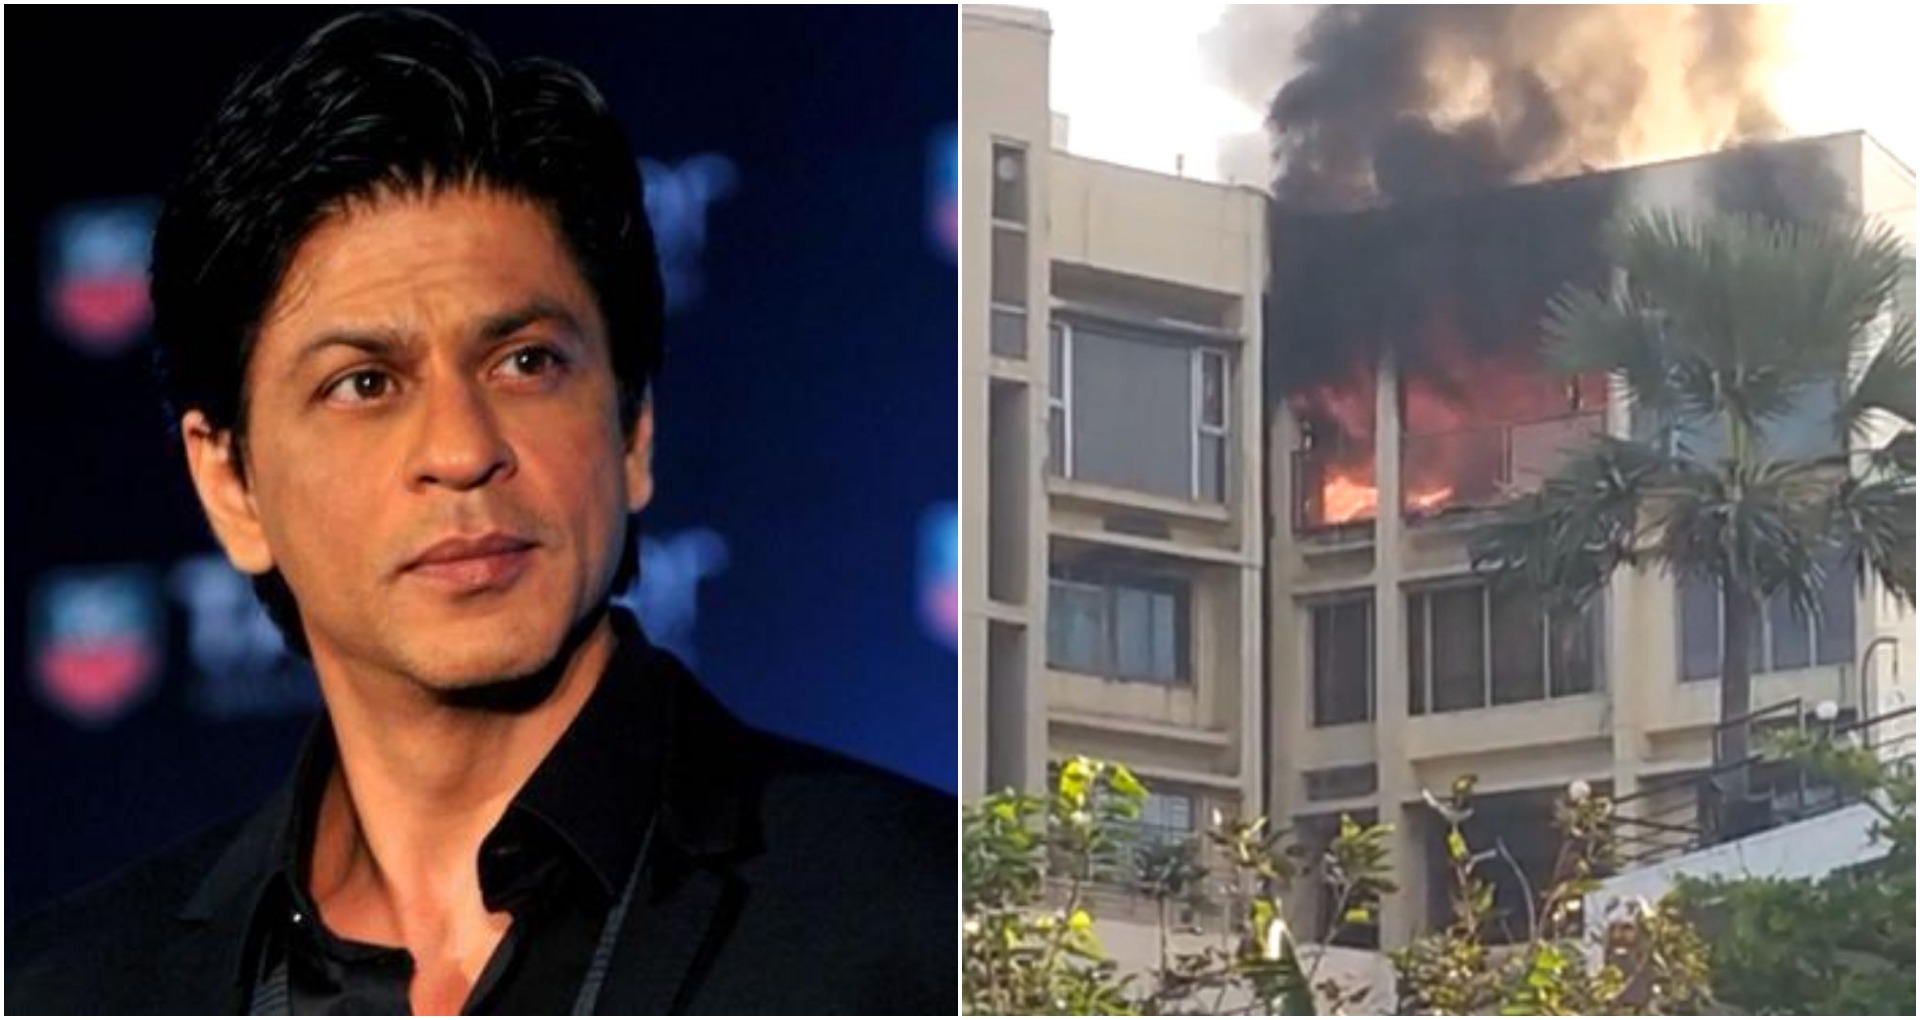 मुंबई के बांद्रा में गुरुवार सुबह करीब 9 बजे एक बिल्डिंग के फ्लैट में भयानक आग लग गई। यह बिल्डिंग एक्टर शाहरुख खान (ShahRukh Khan) के बंगले ‘मन्नत’ (Mannat) के पास ही है। इस हादसे को लेकर बताया जा रहा है कि आग लगने से फ्लैट में मौजूद 20 साल की एक युवती की मौत हो गई। वहीं एक अन्य गंभीर रूप से घायल है। हादसे में एक अन्य जो अभी अस्पताल में भर्ती का 90 प्रतिशत हिस्सा जल गया है। जो नौकरानी बताई जा रही है। अभी तक आग लगने का कारन नहीं पता चला है। अधिकारी इसकी जाँच कर रहे हैं।